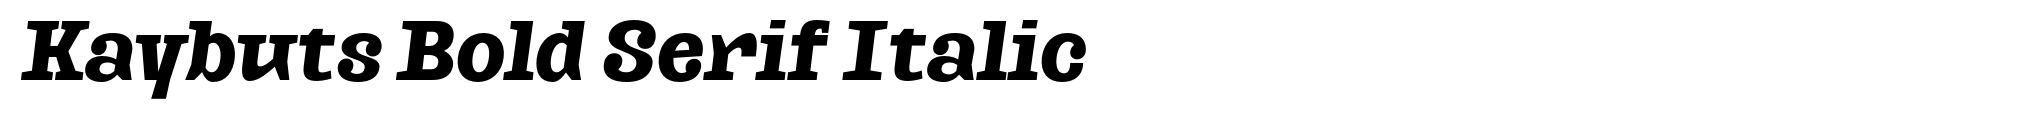 Kaybuts Bold Serif Italic image